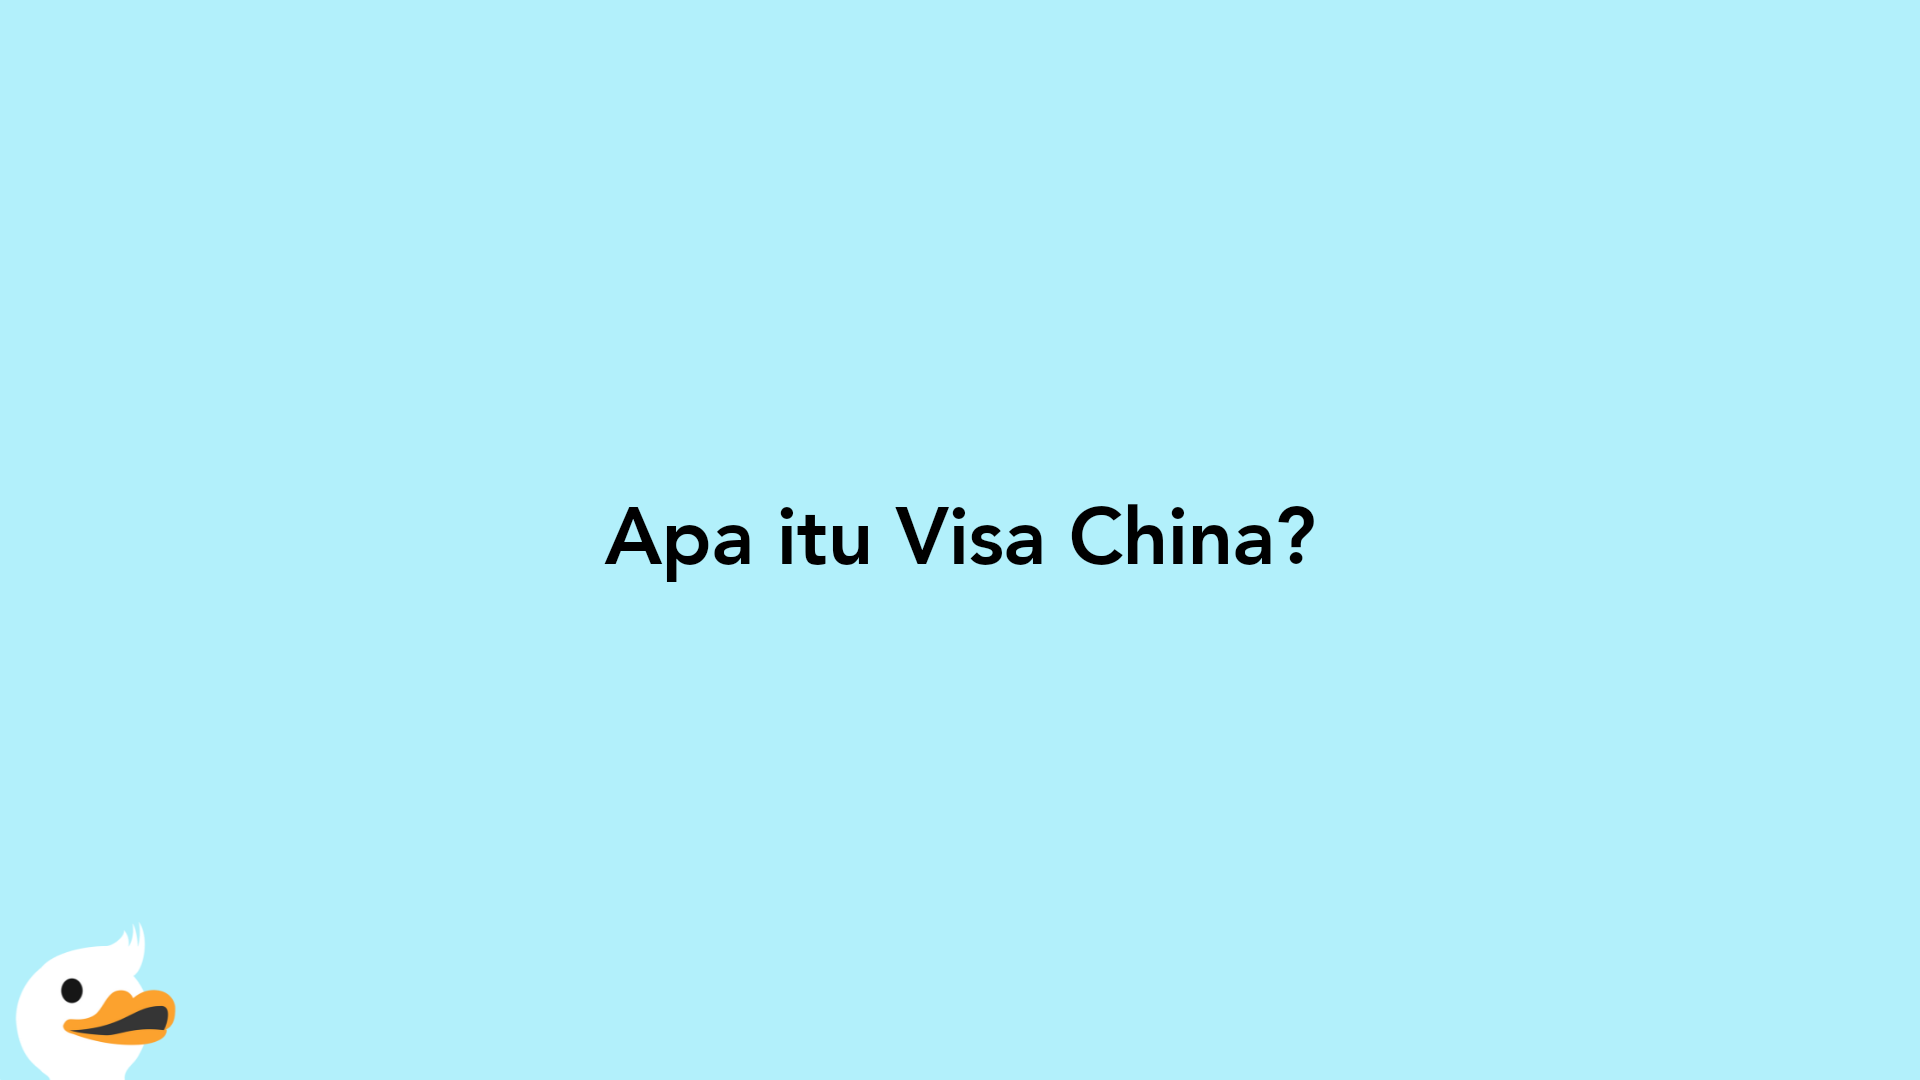 Apa itu Visa China?